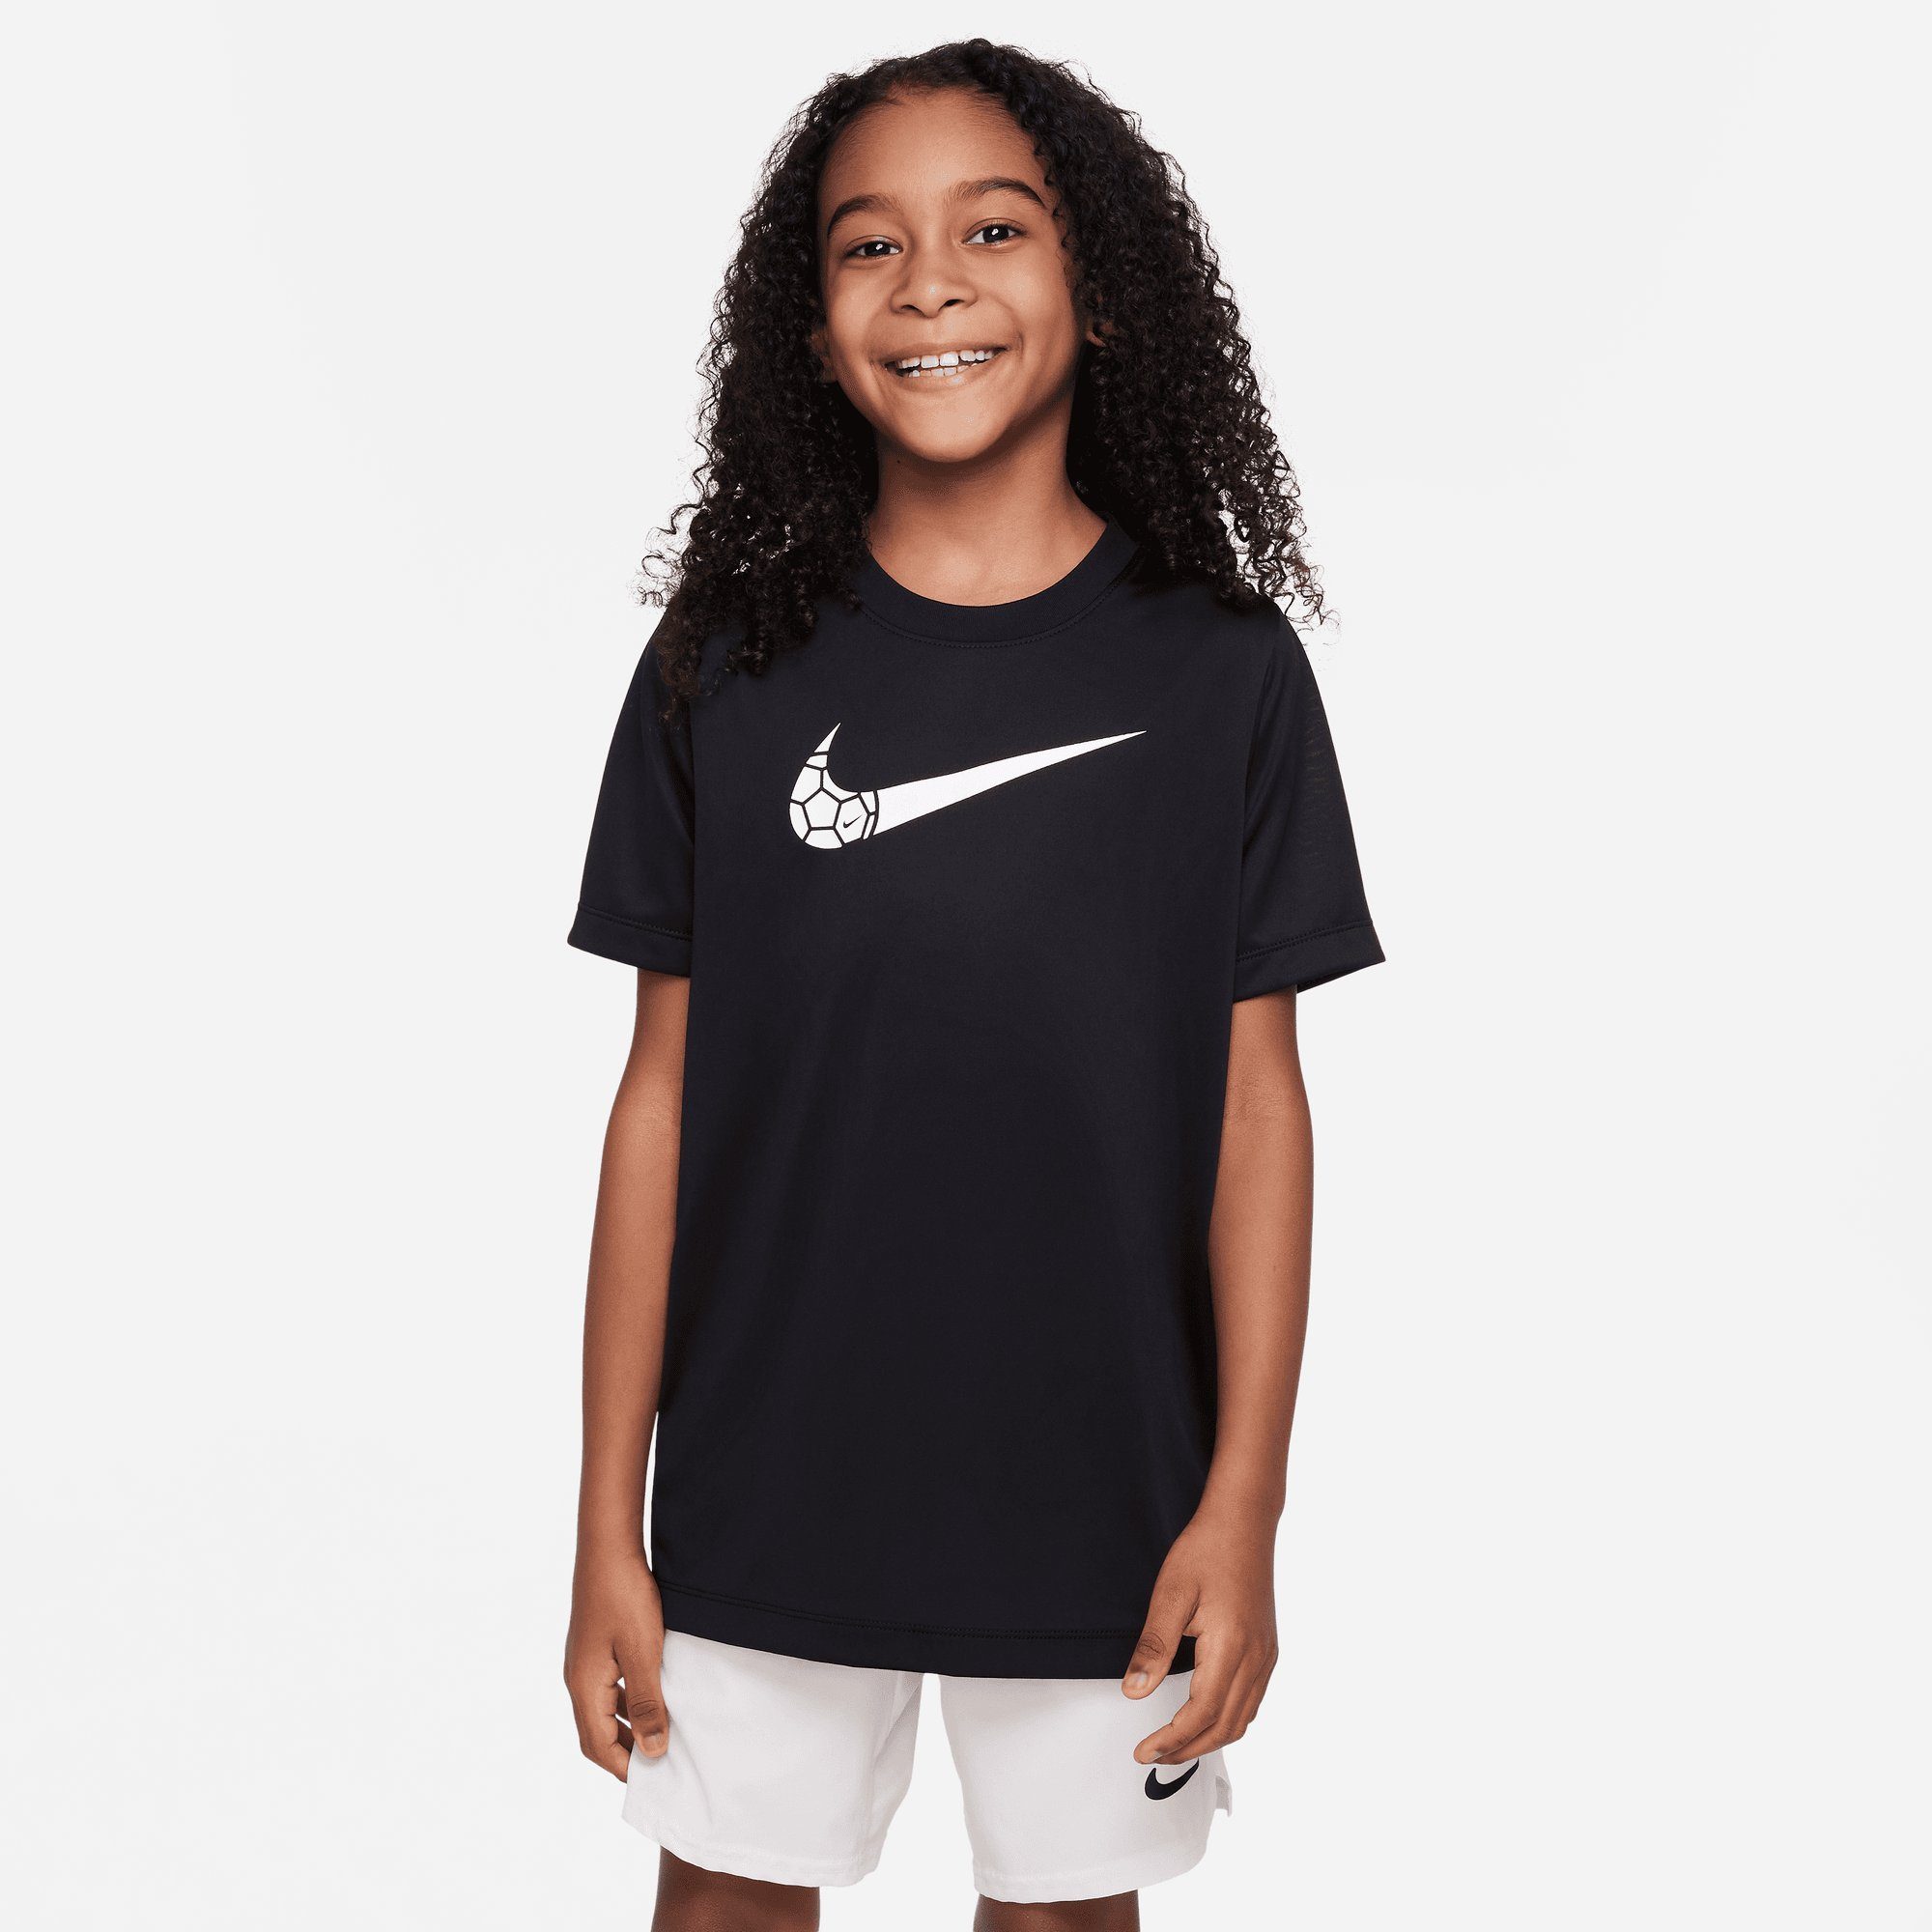 KIDS' (BOYS) T-Shirt Nike DRI-FIT TRAINING Sportswear T-SHIRT BLACK BIG